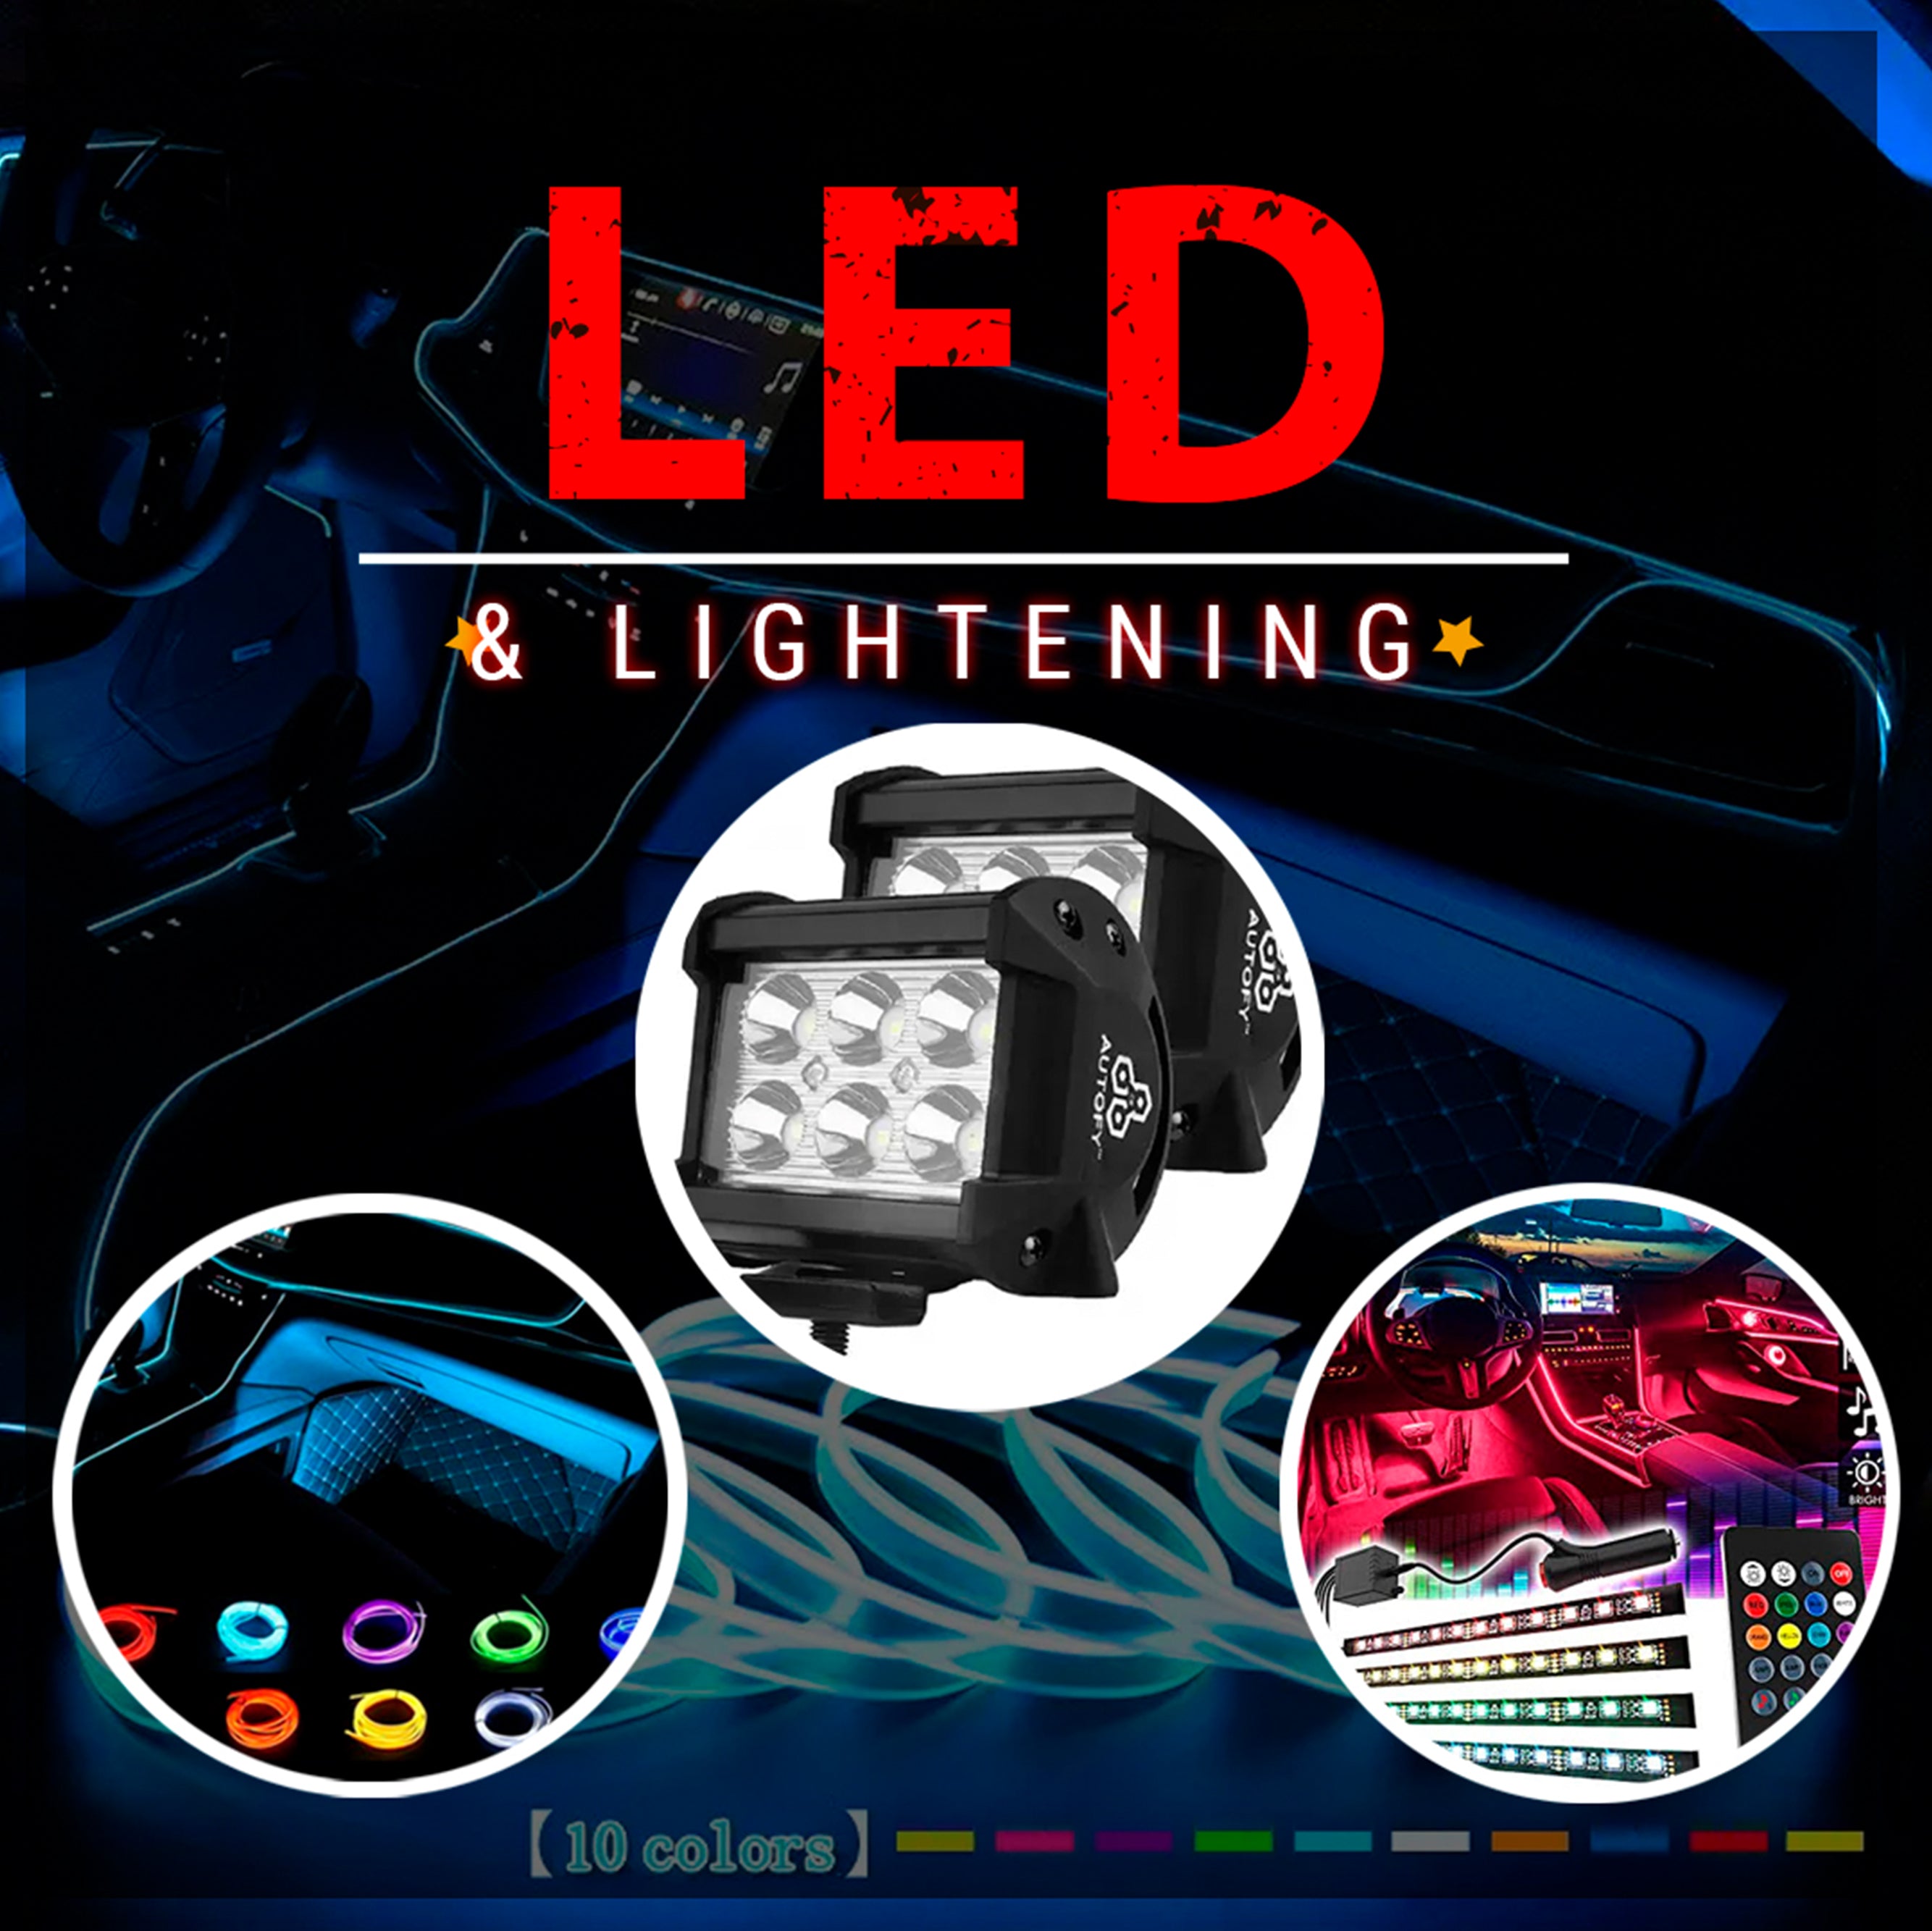 LED & Lightening